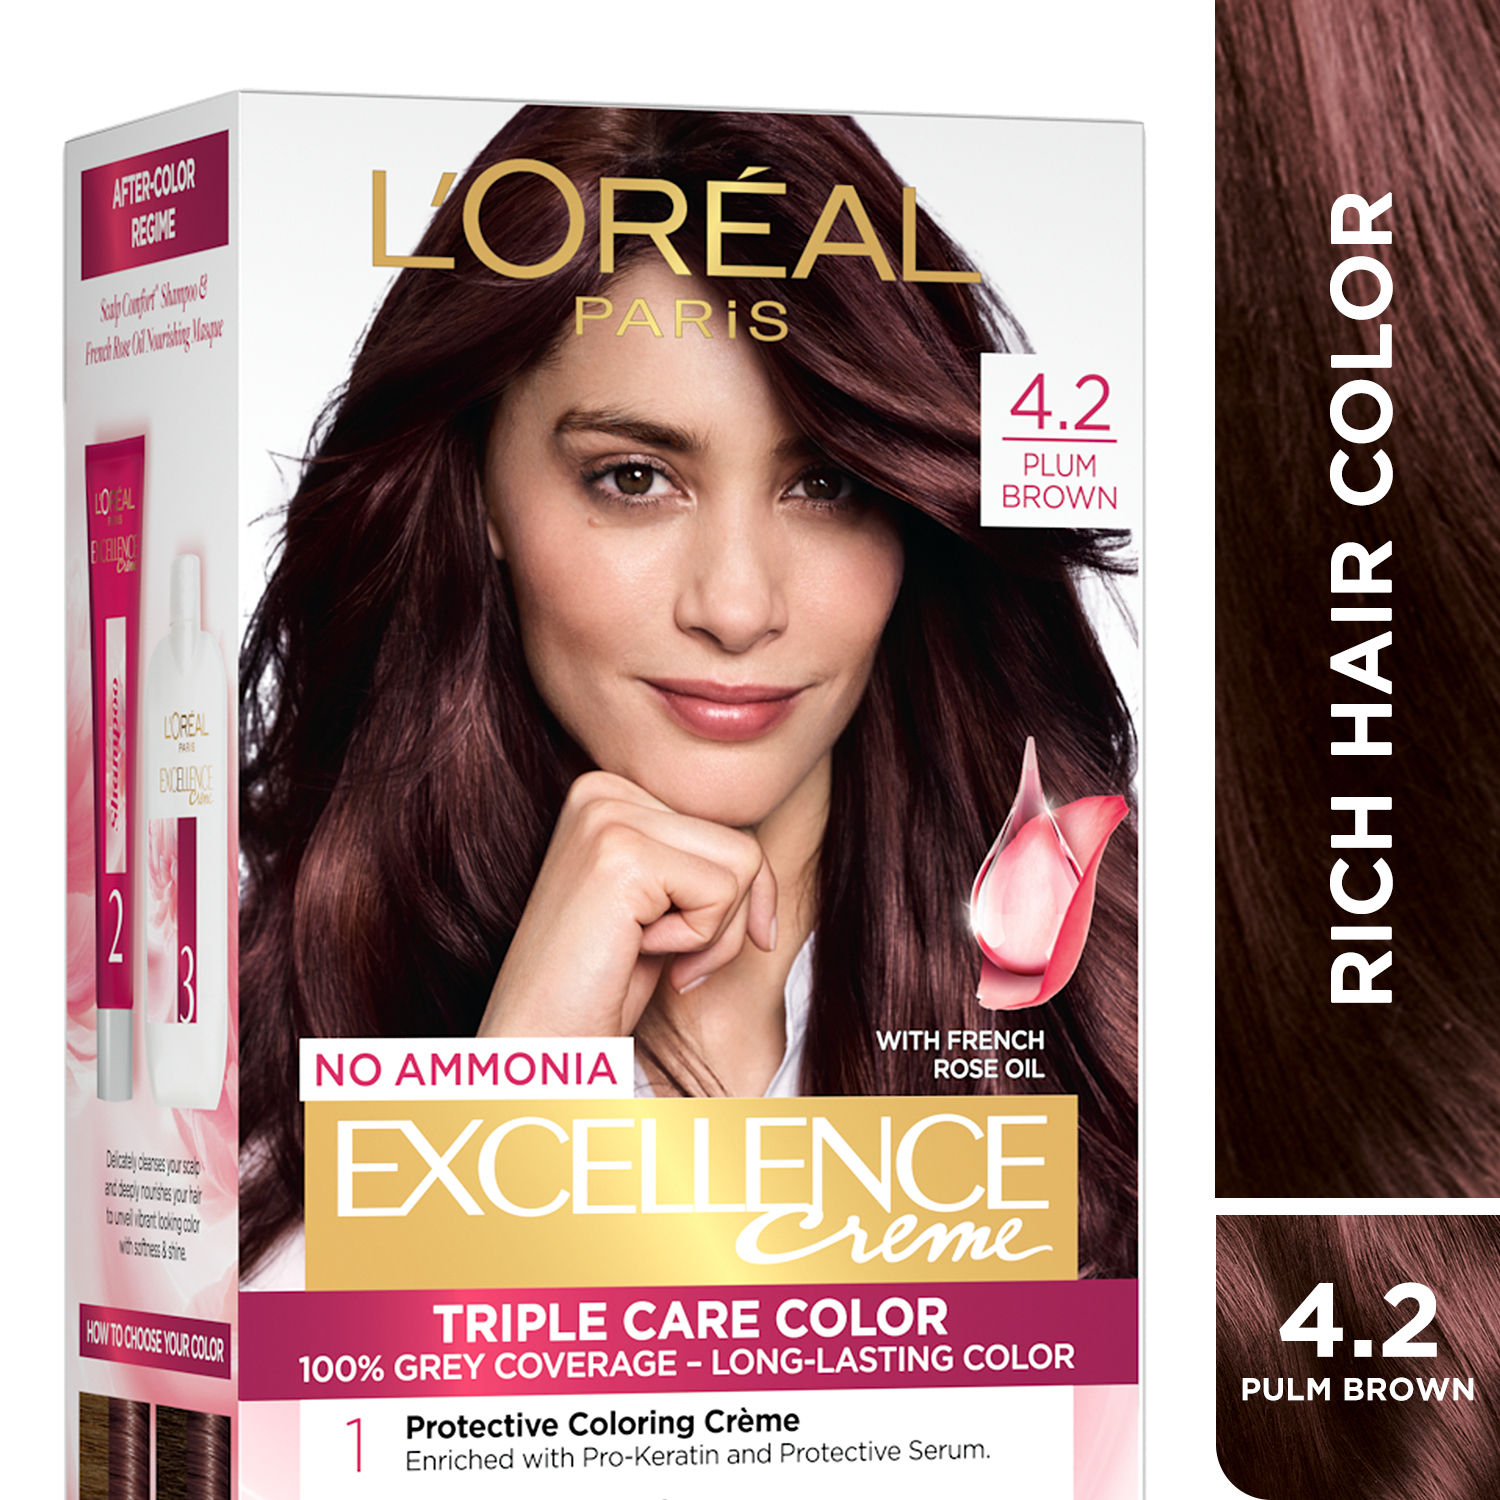 Buy L'Oreal Paris Excellence Creme Hair Color - Plum Brown 4.2 (72 ml+100 g) - Purplle